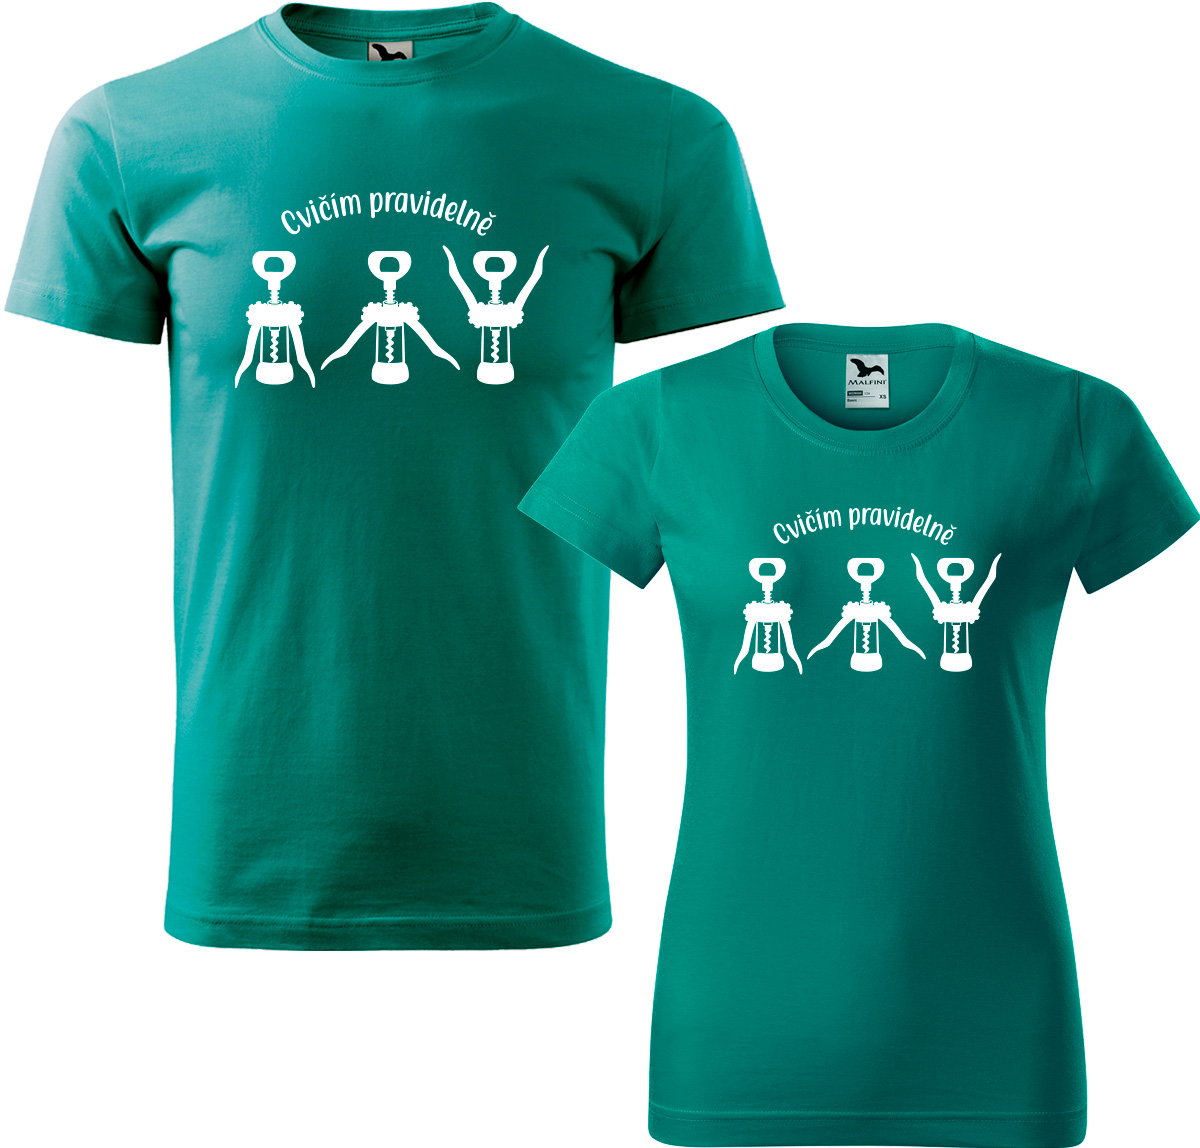 Trička pro páry - Cvičím pravidelně Barva: Emerald (19), Velikost dámské tričko: L, Velikost pánské tričko: XL